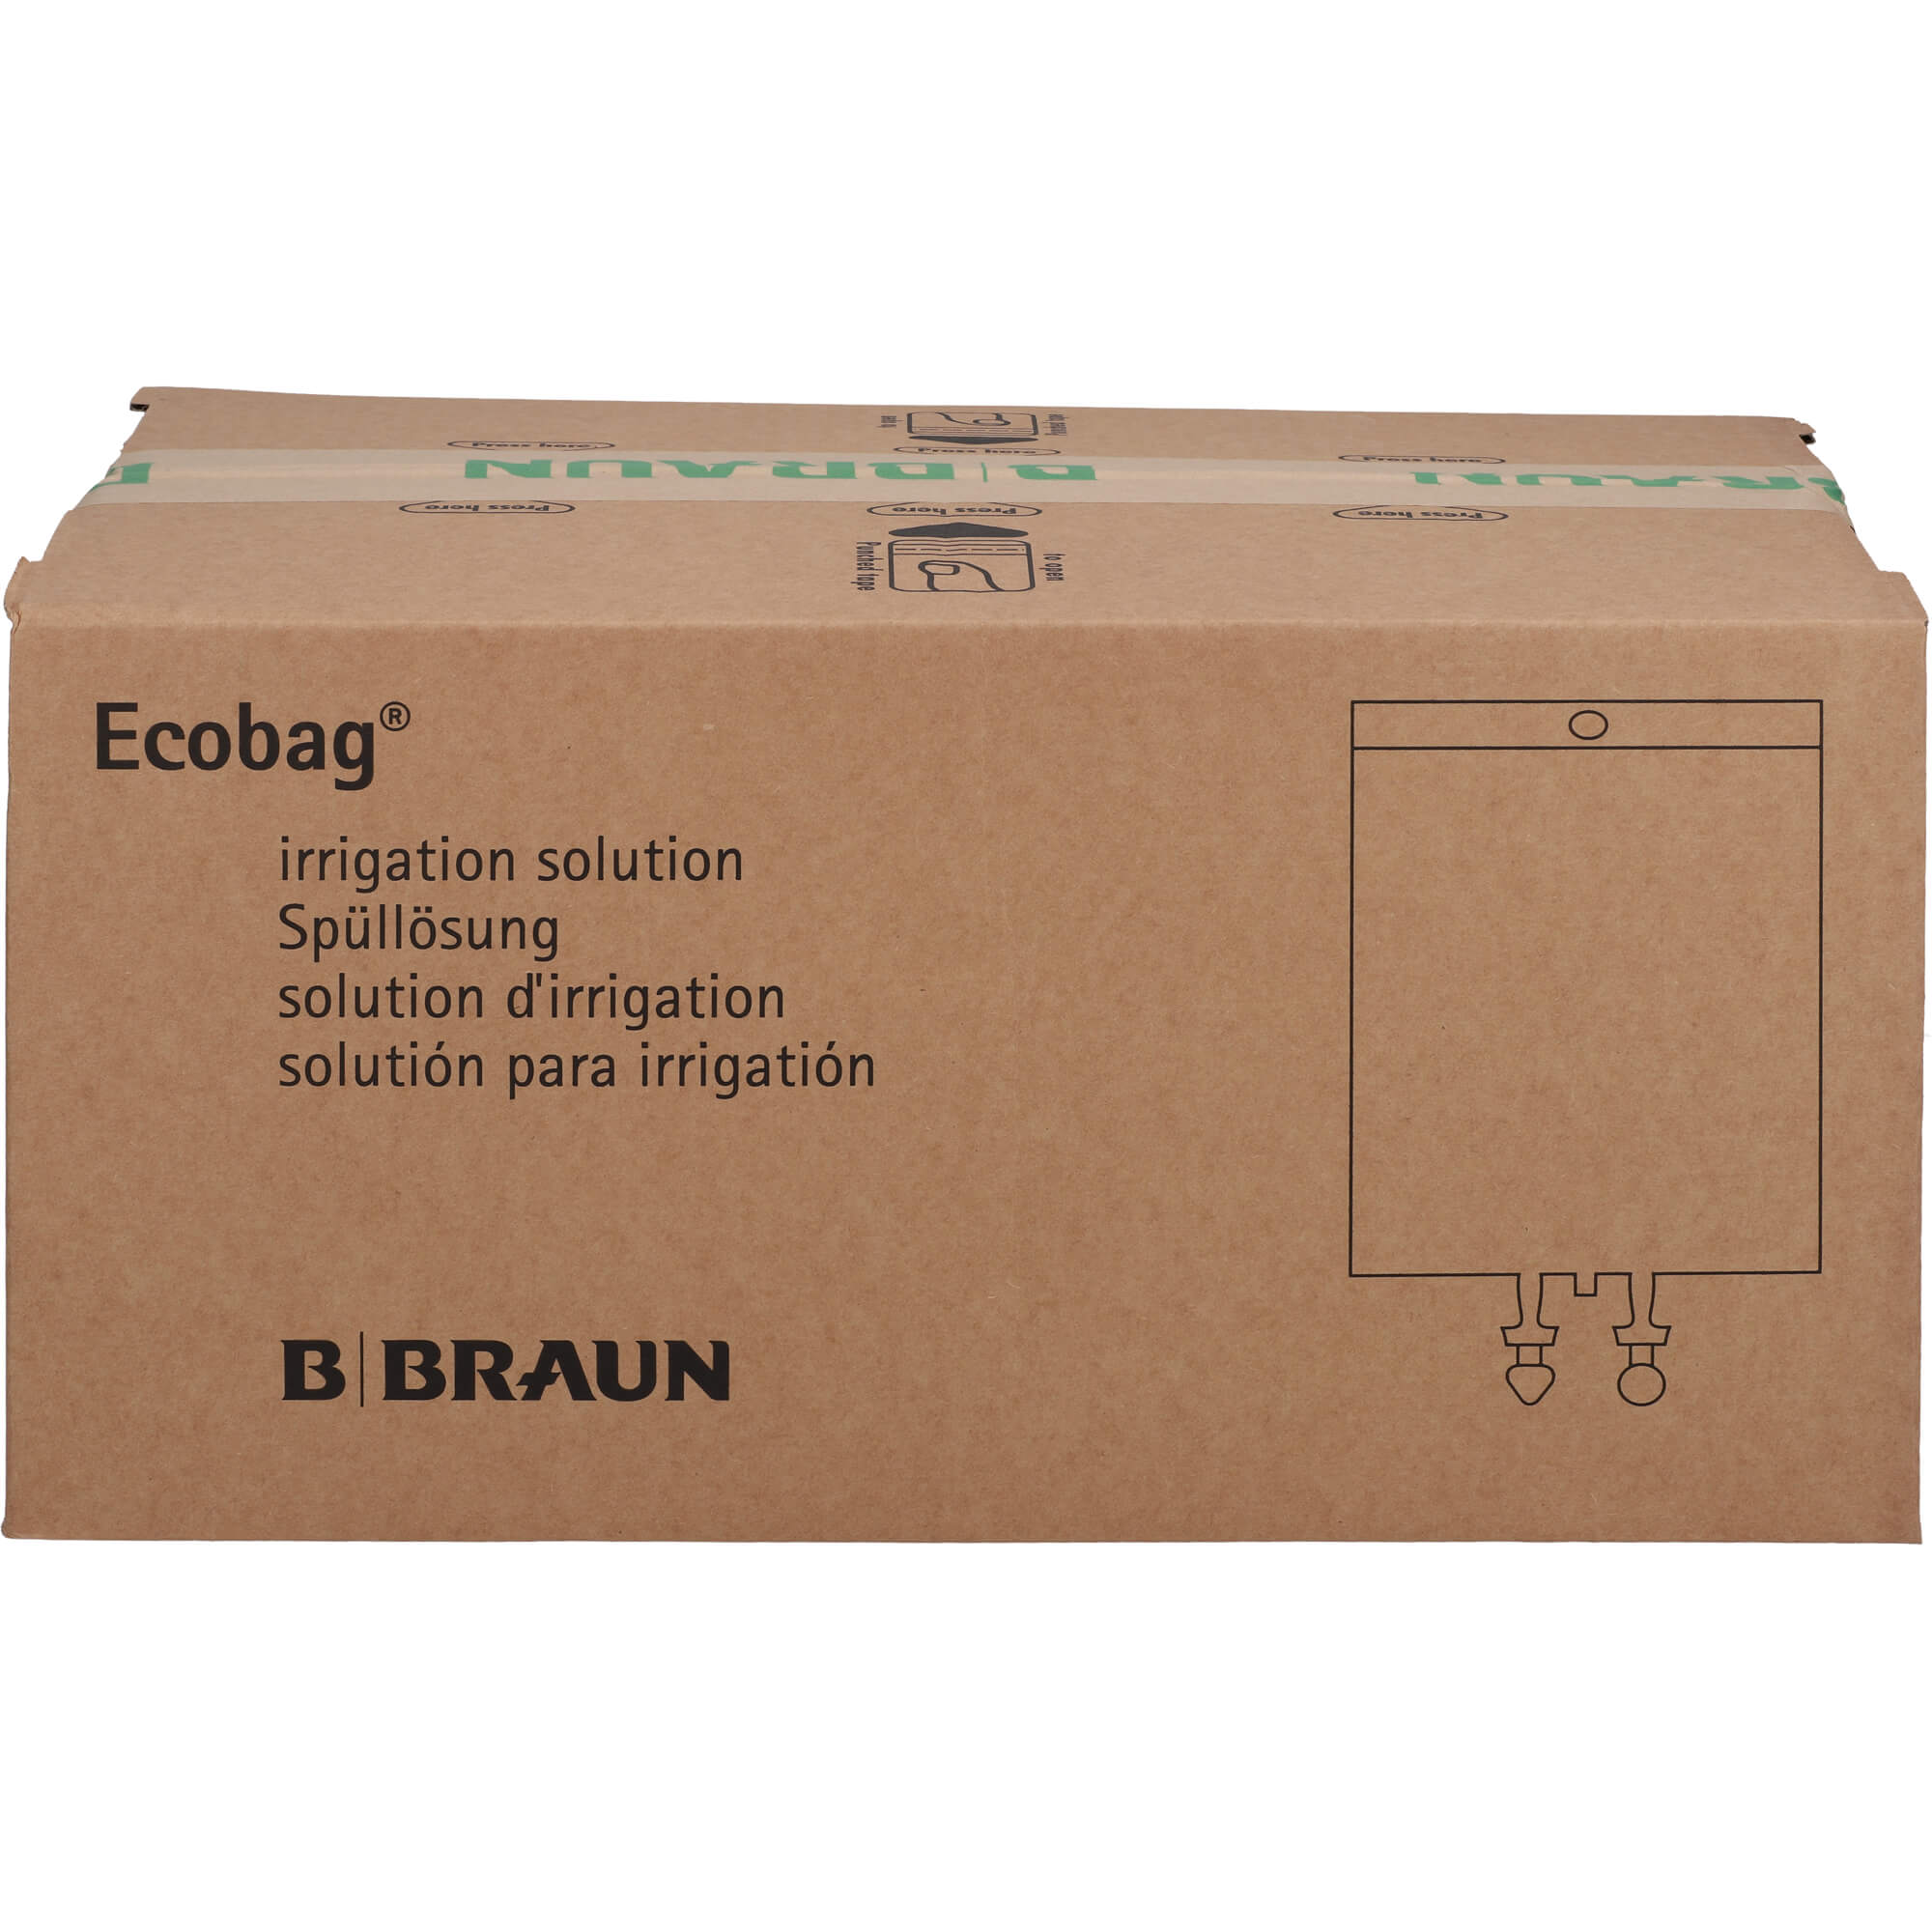 GLYCINE 1,5% B.Braun Spüllsg.Ecobag Click